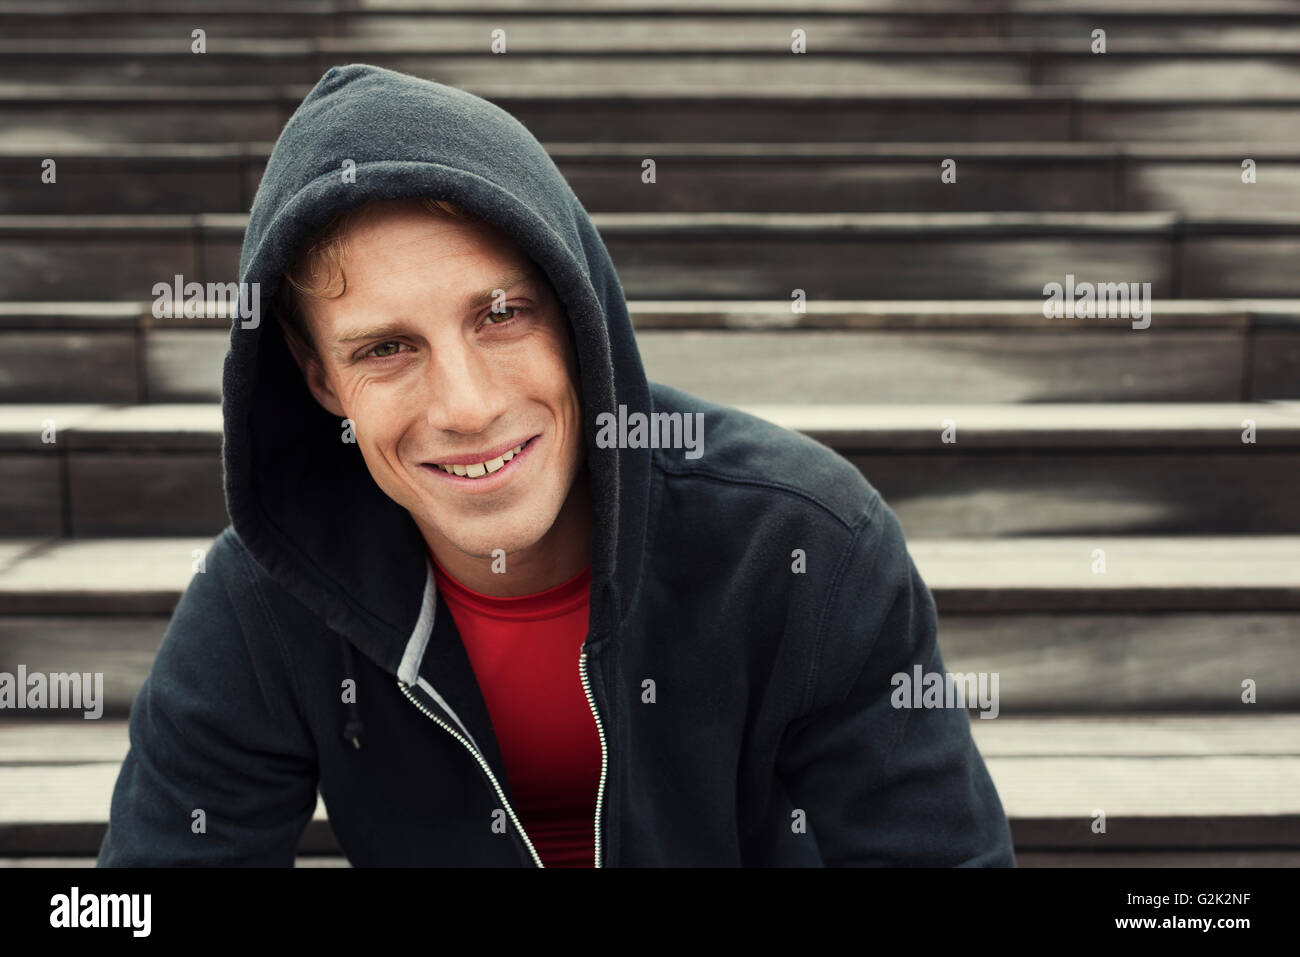 Porträt des jungen urbanen Sportler. Schwarzer Hoodie. Sitzt auf der Treppe Stockfoto